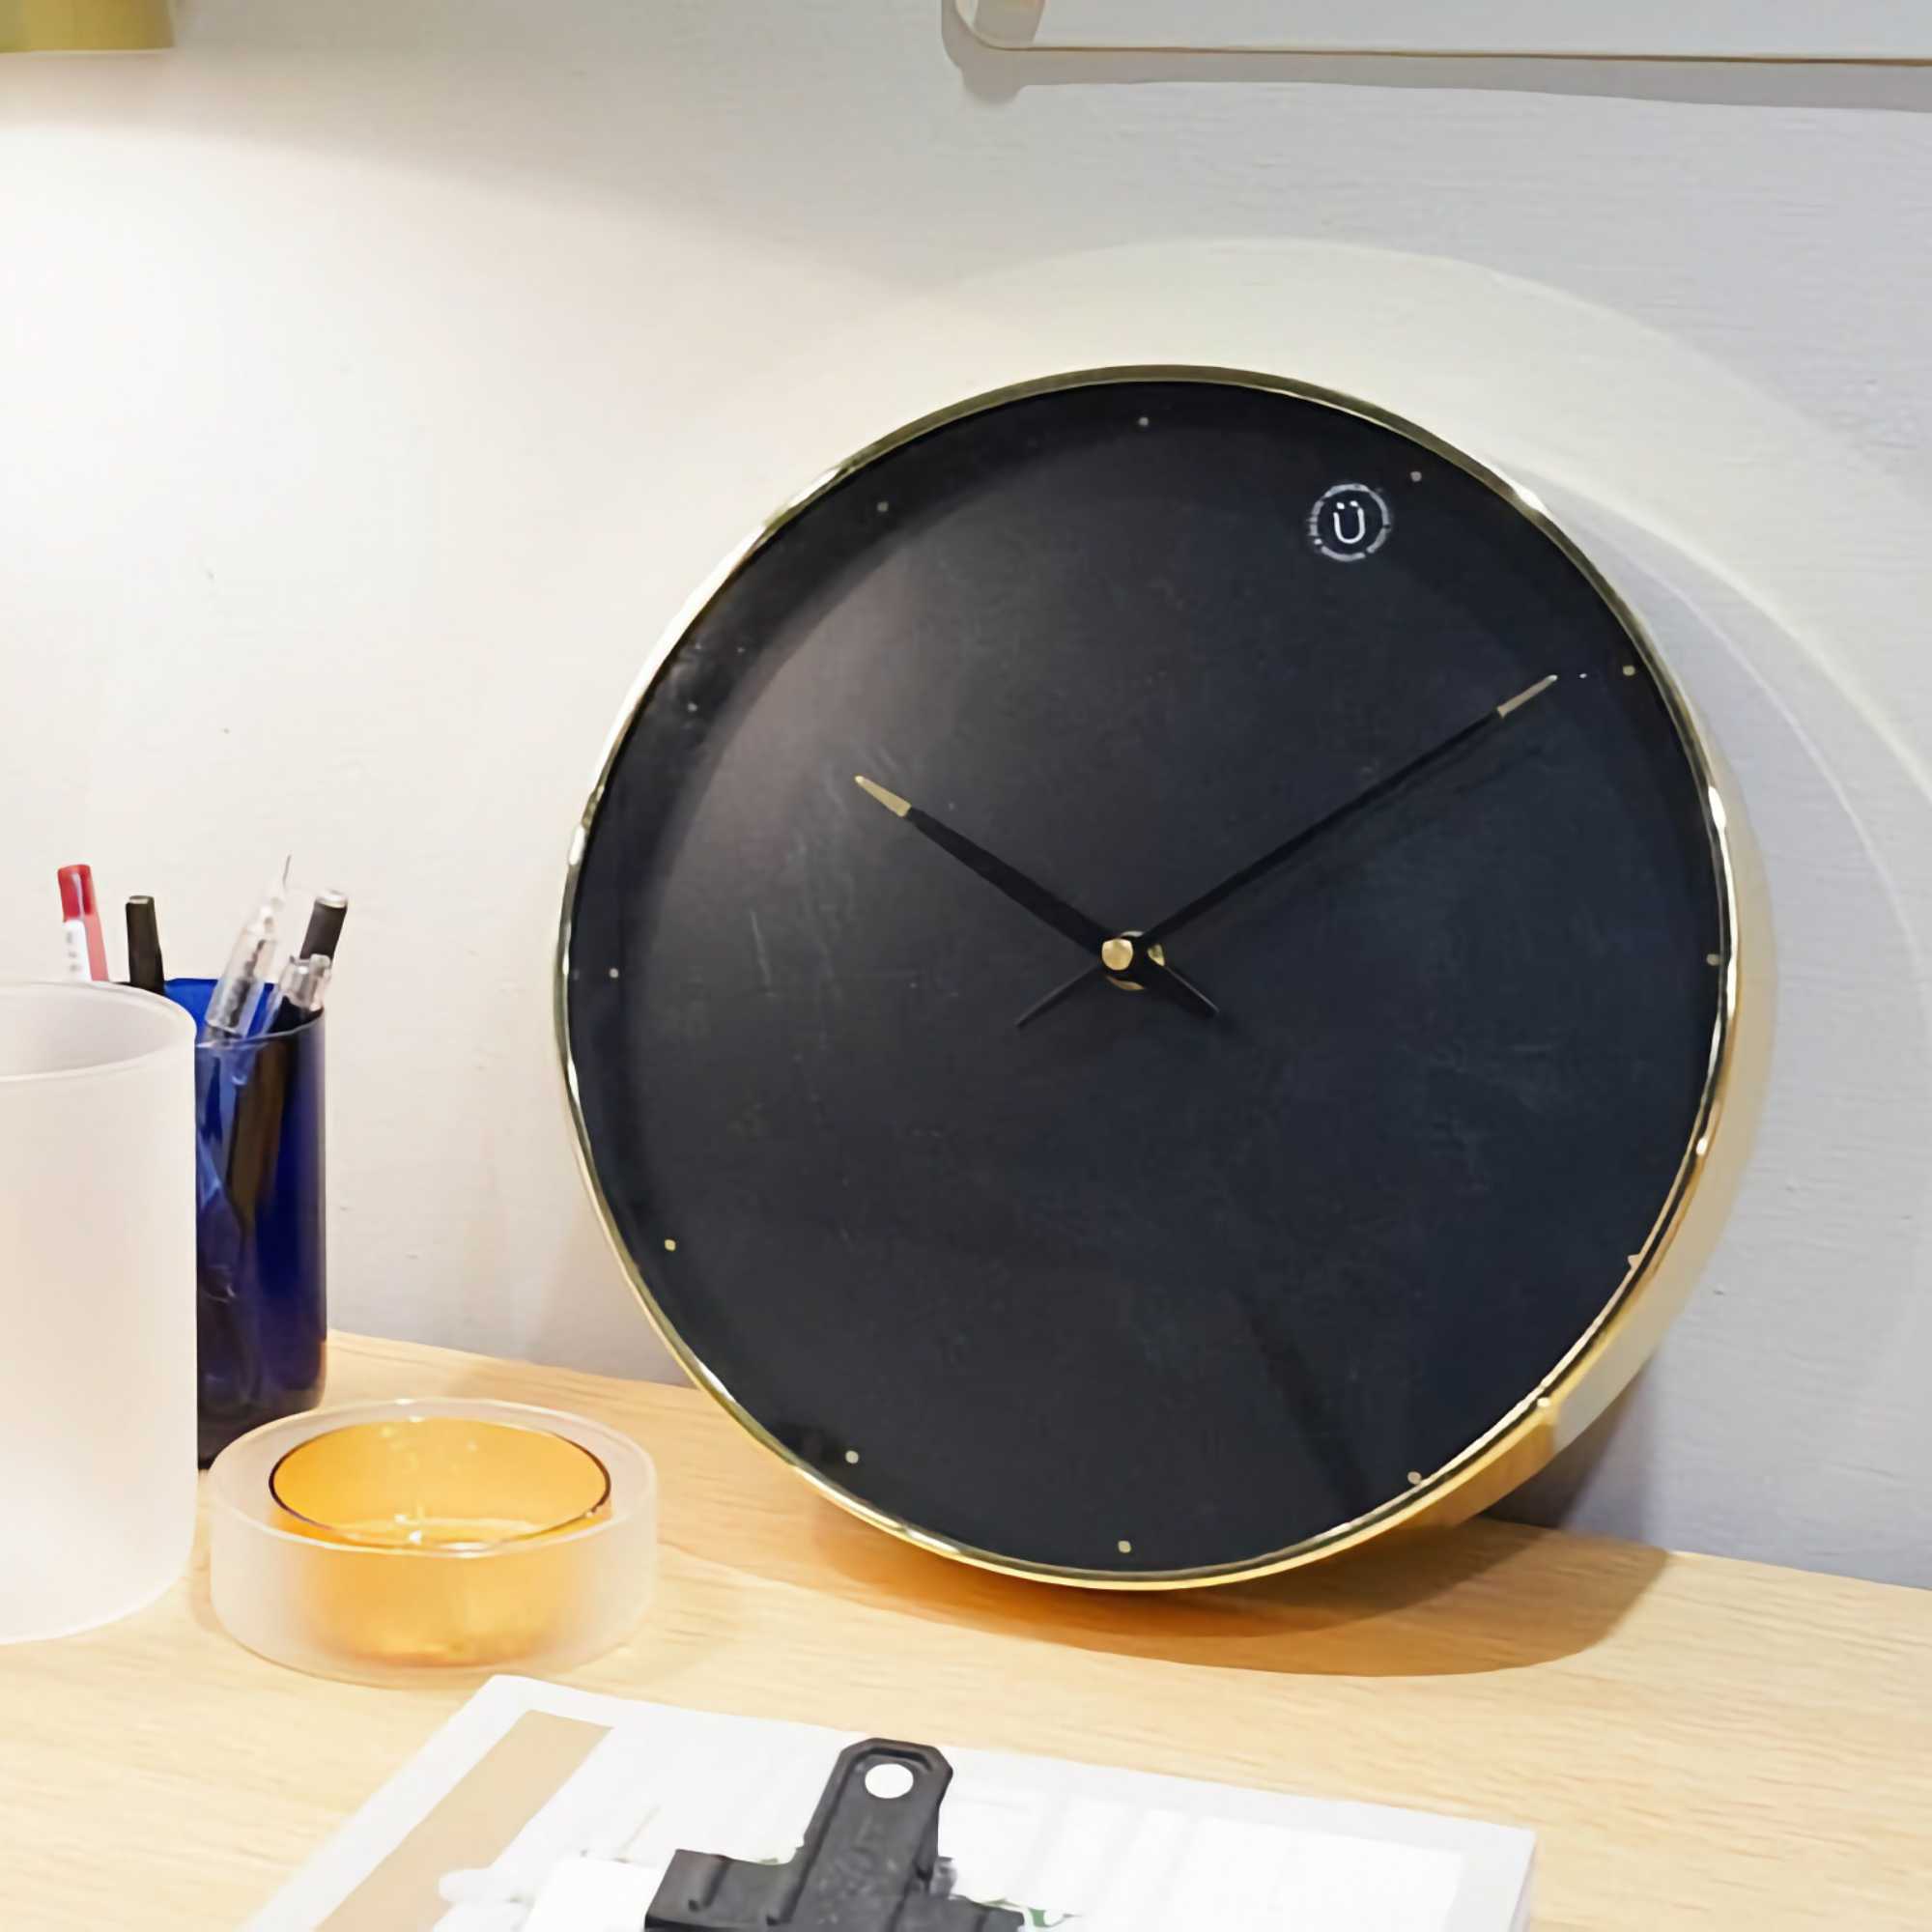 Hübsch Time Wall Clock, Brass/Black